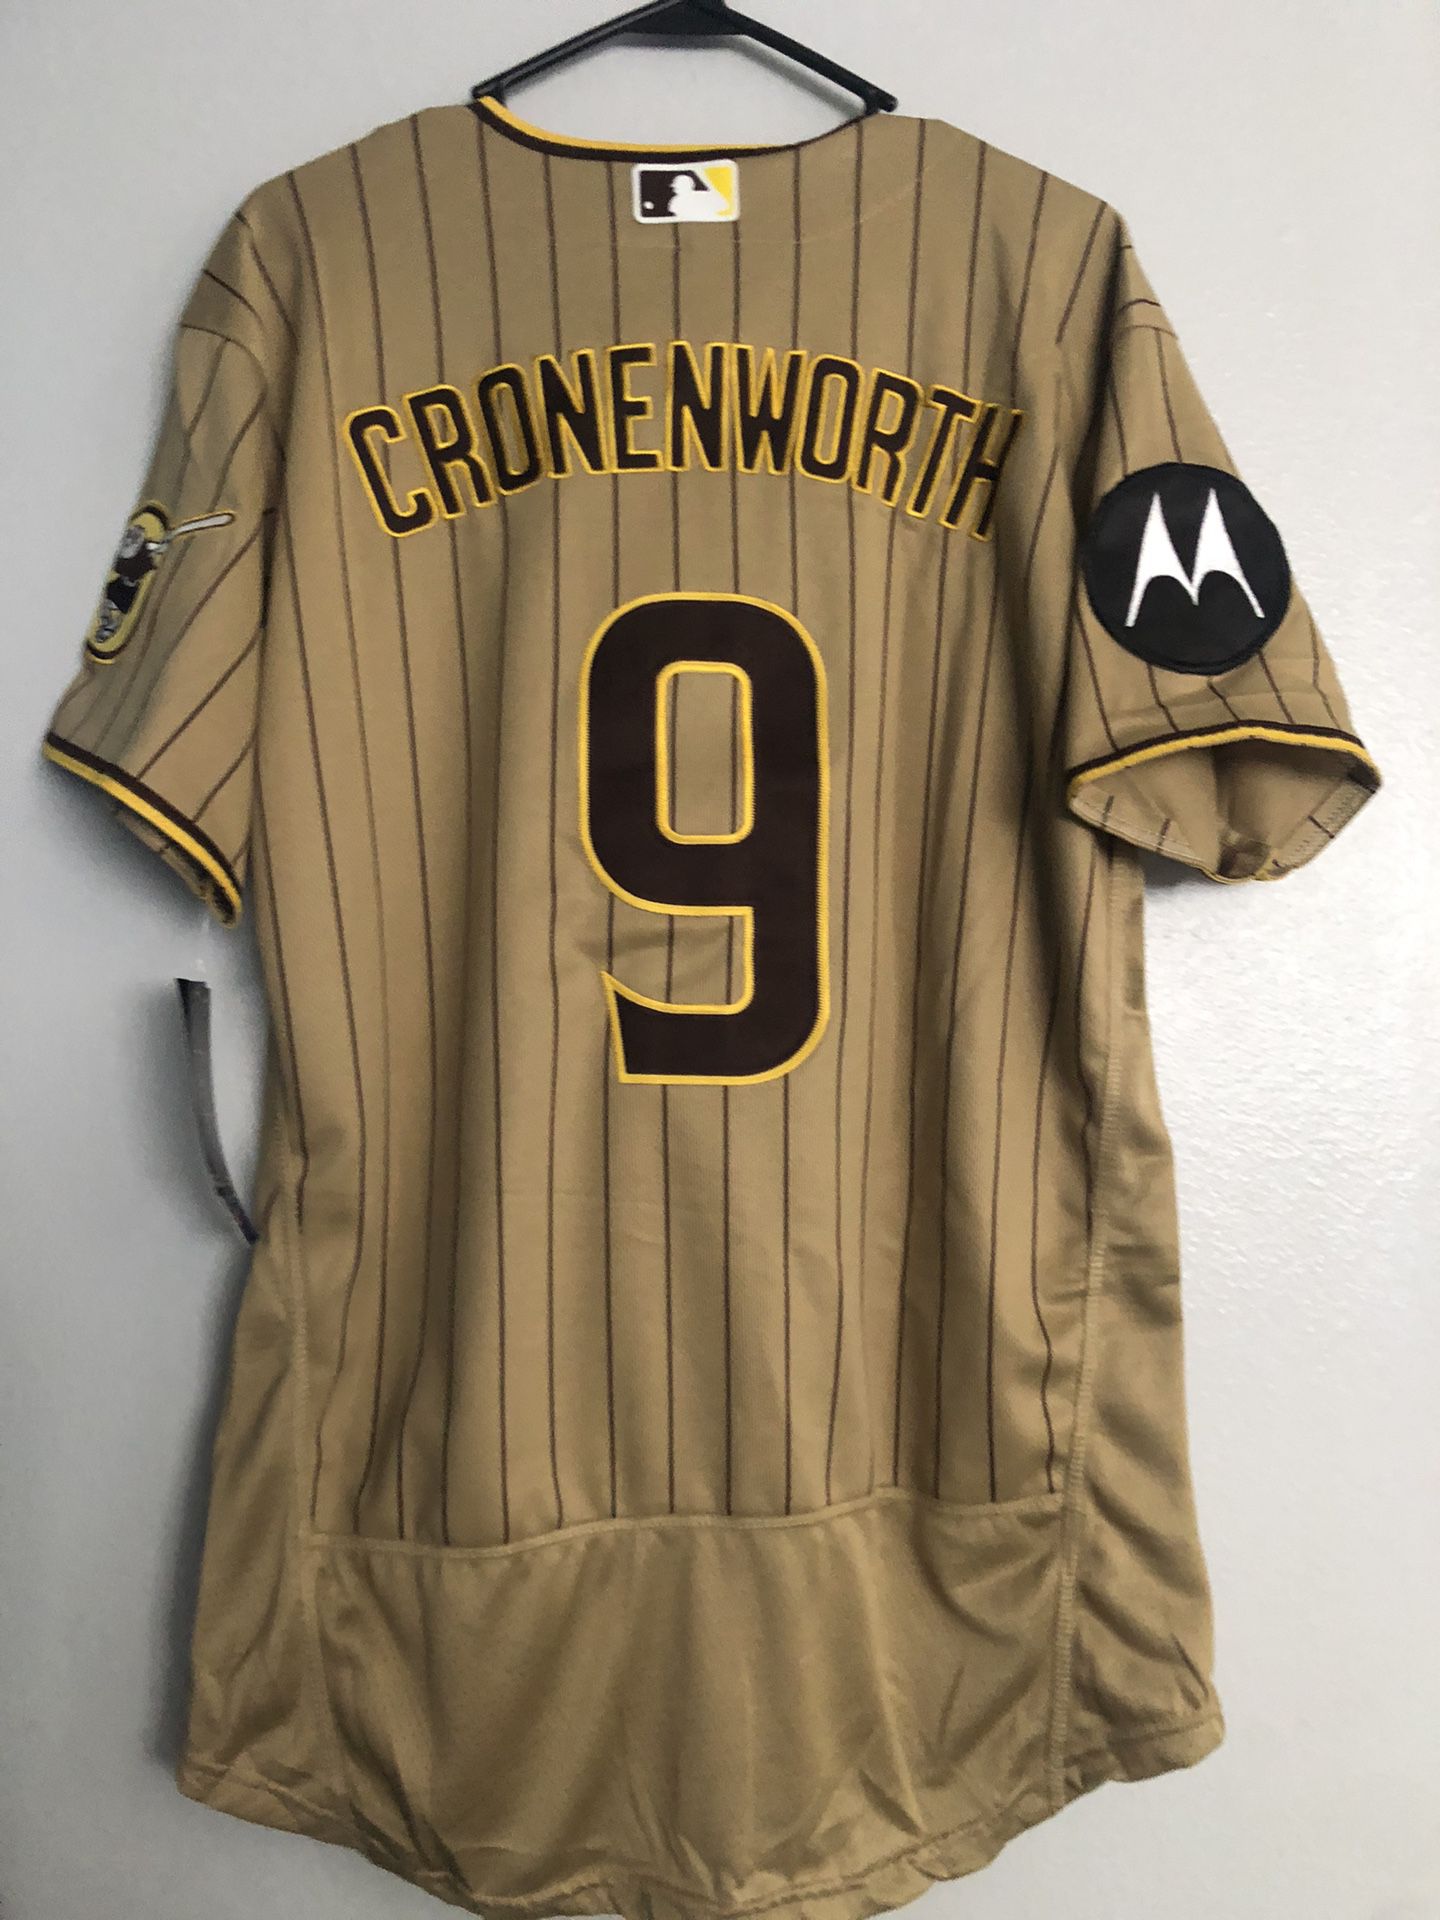 cronenworth jersey